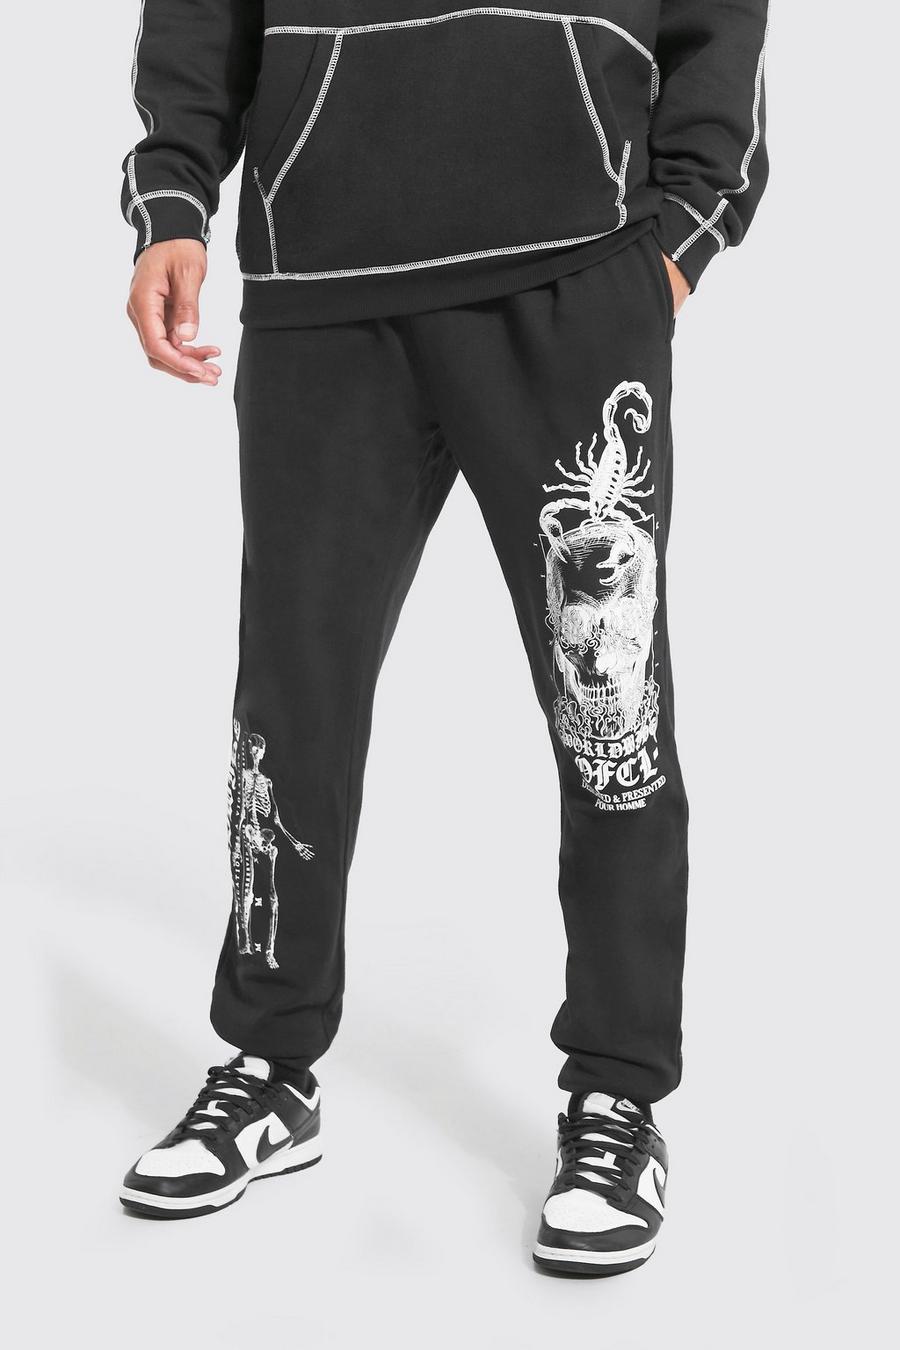 Pantaloni tuta Tall Worldwide Ofcl con grafica di scheletro, Black nero image number 1